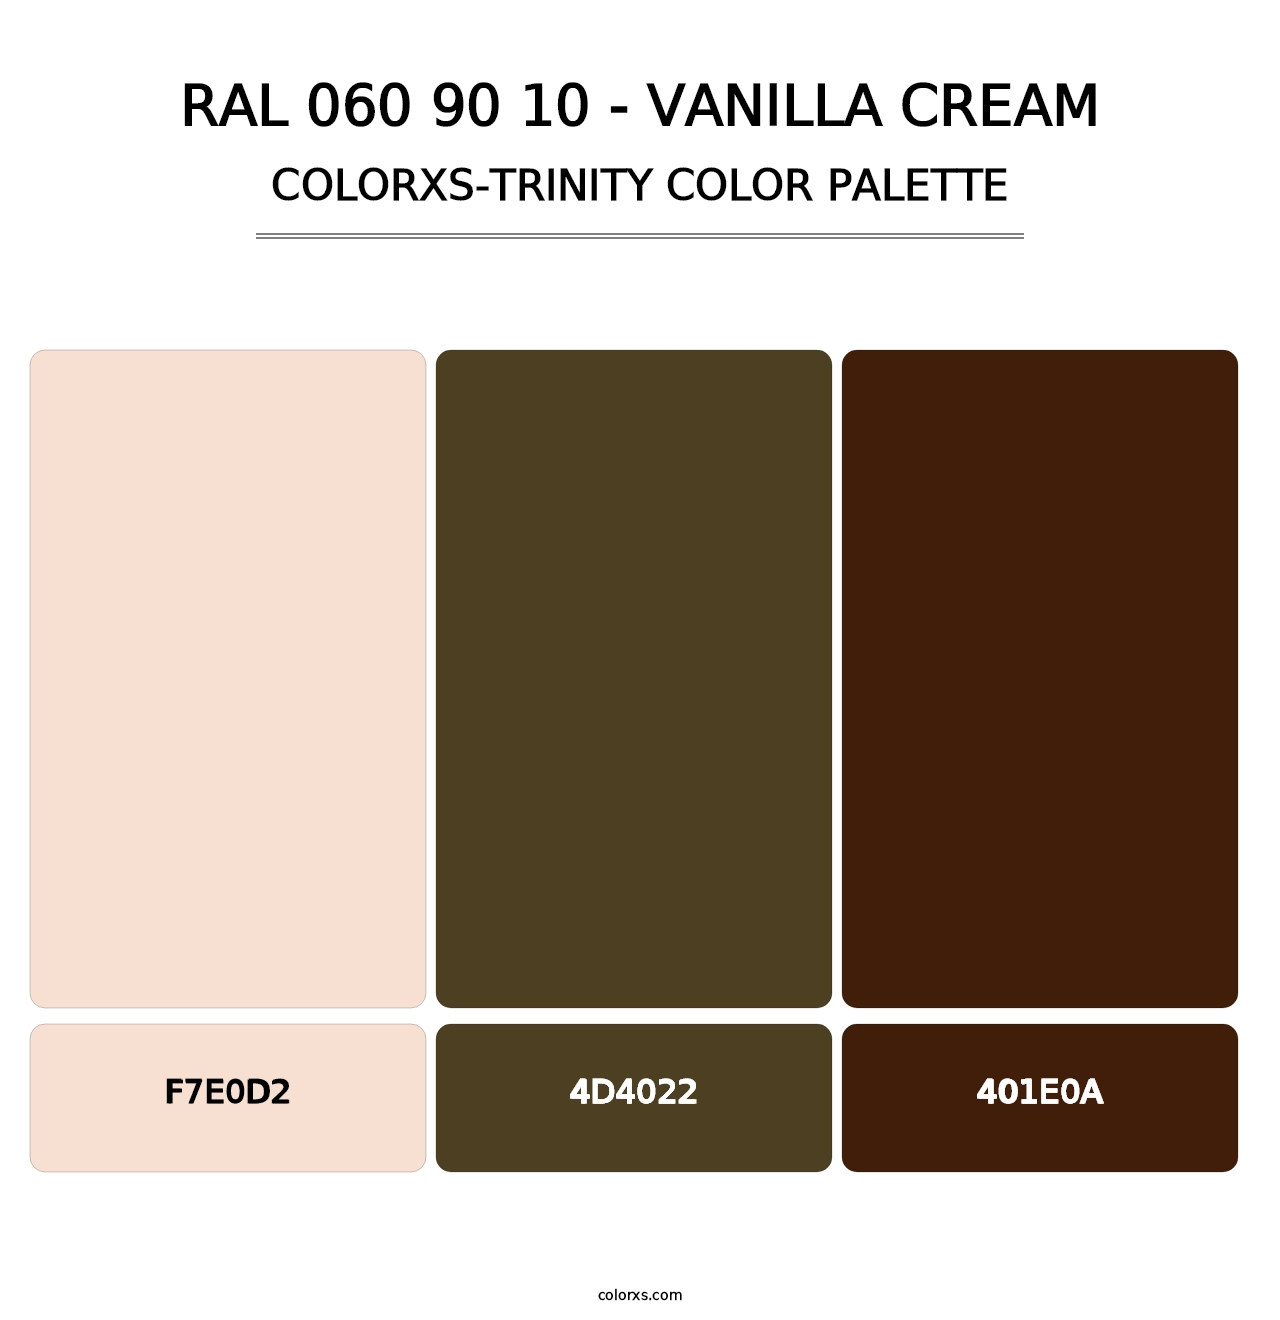 RAL 060 90 10 - Vanilla Cream - Colorxs Trinity Palette